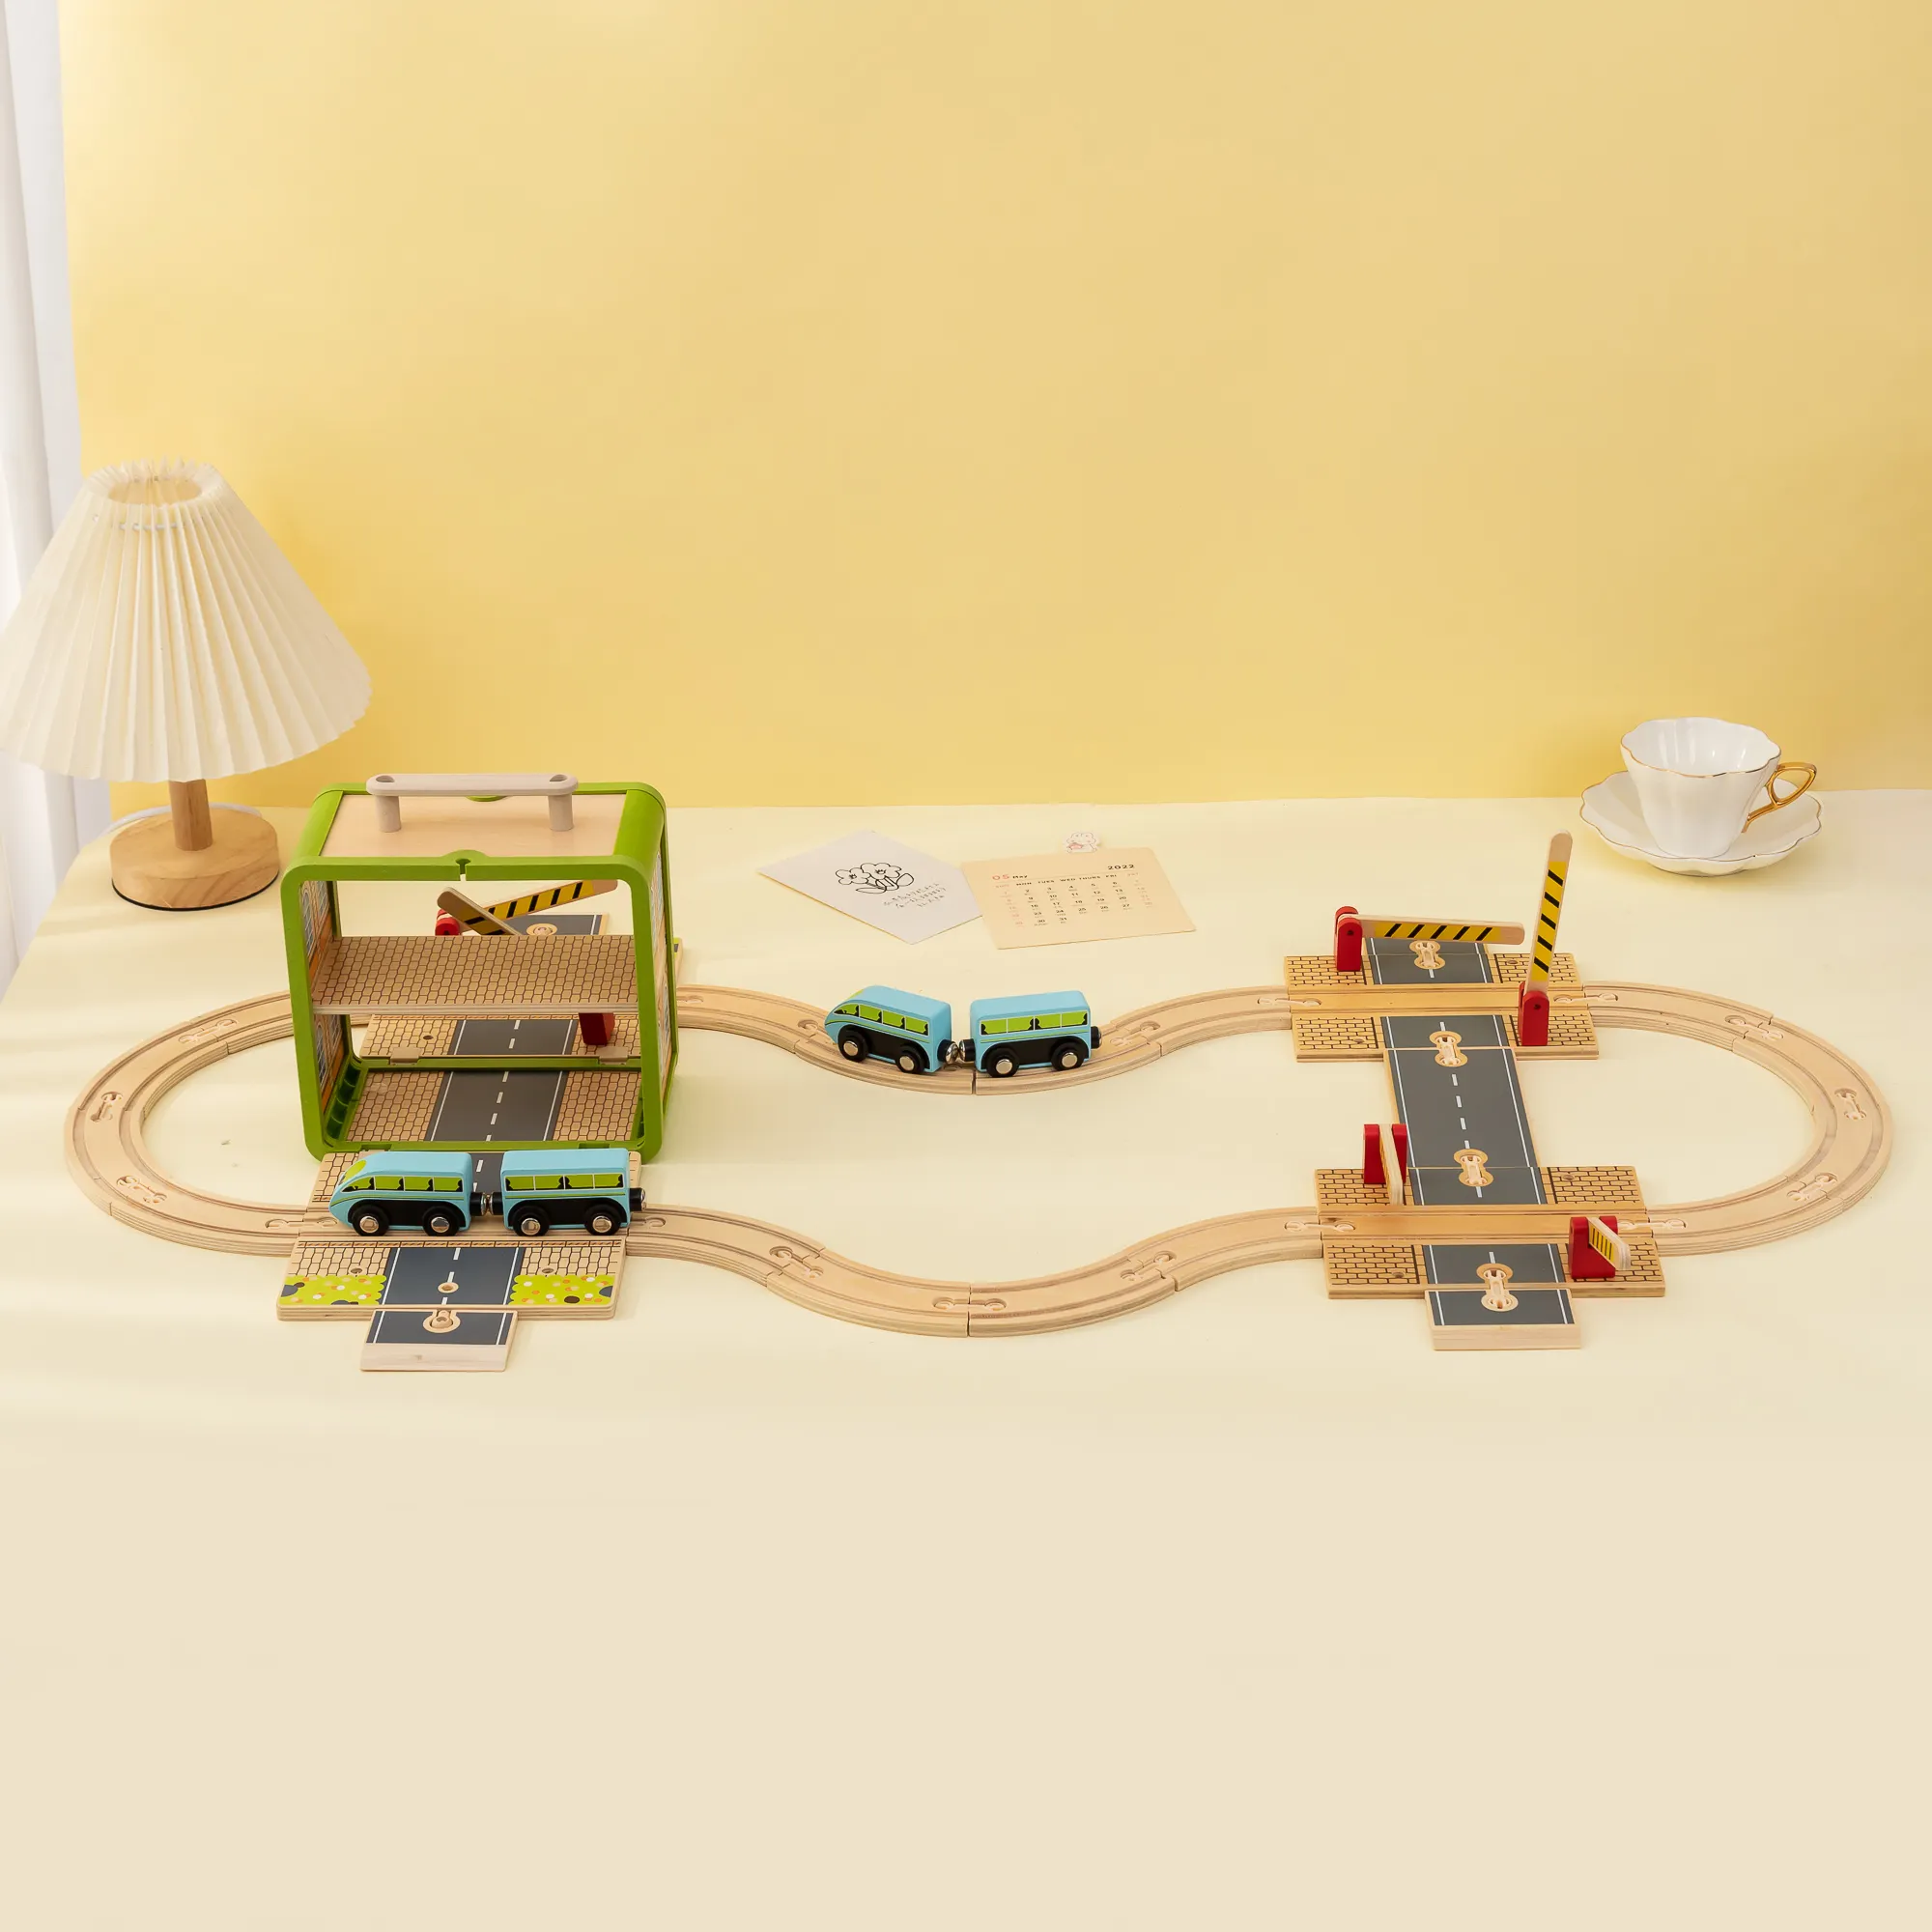 UDEAS OEM Custom Railway Playhouse Boîte de rangement Set Train en bois Jouet pour enfants